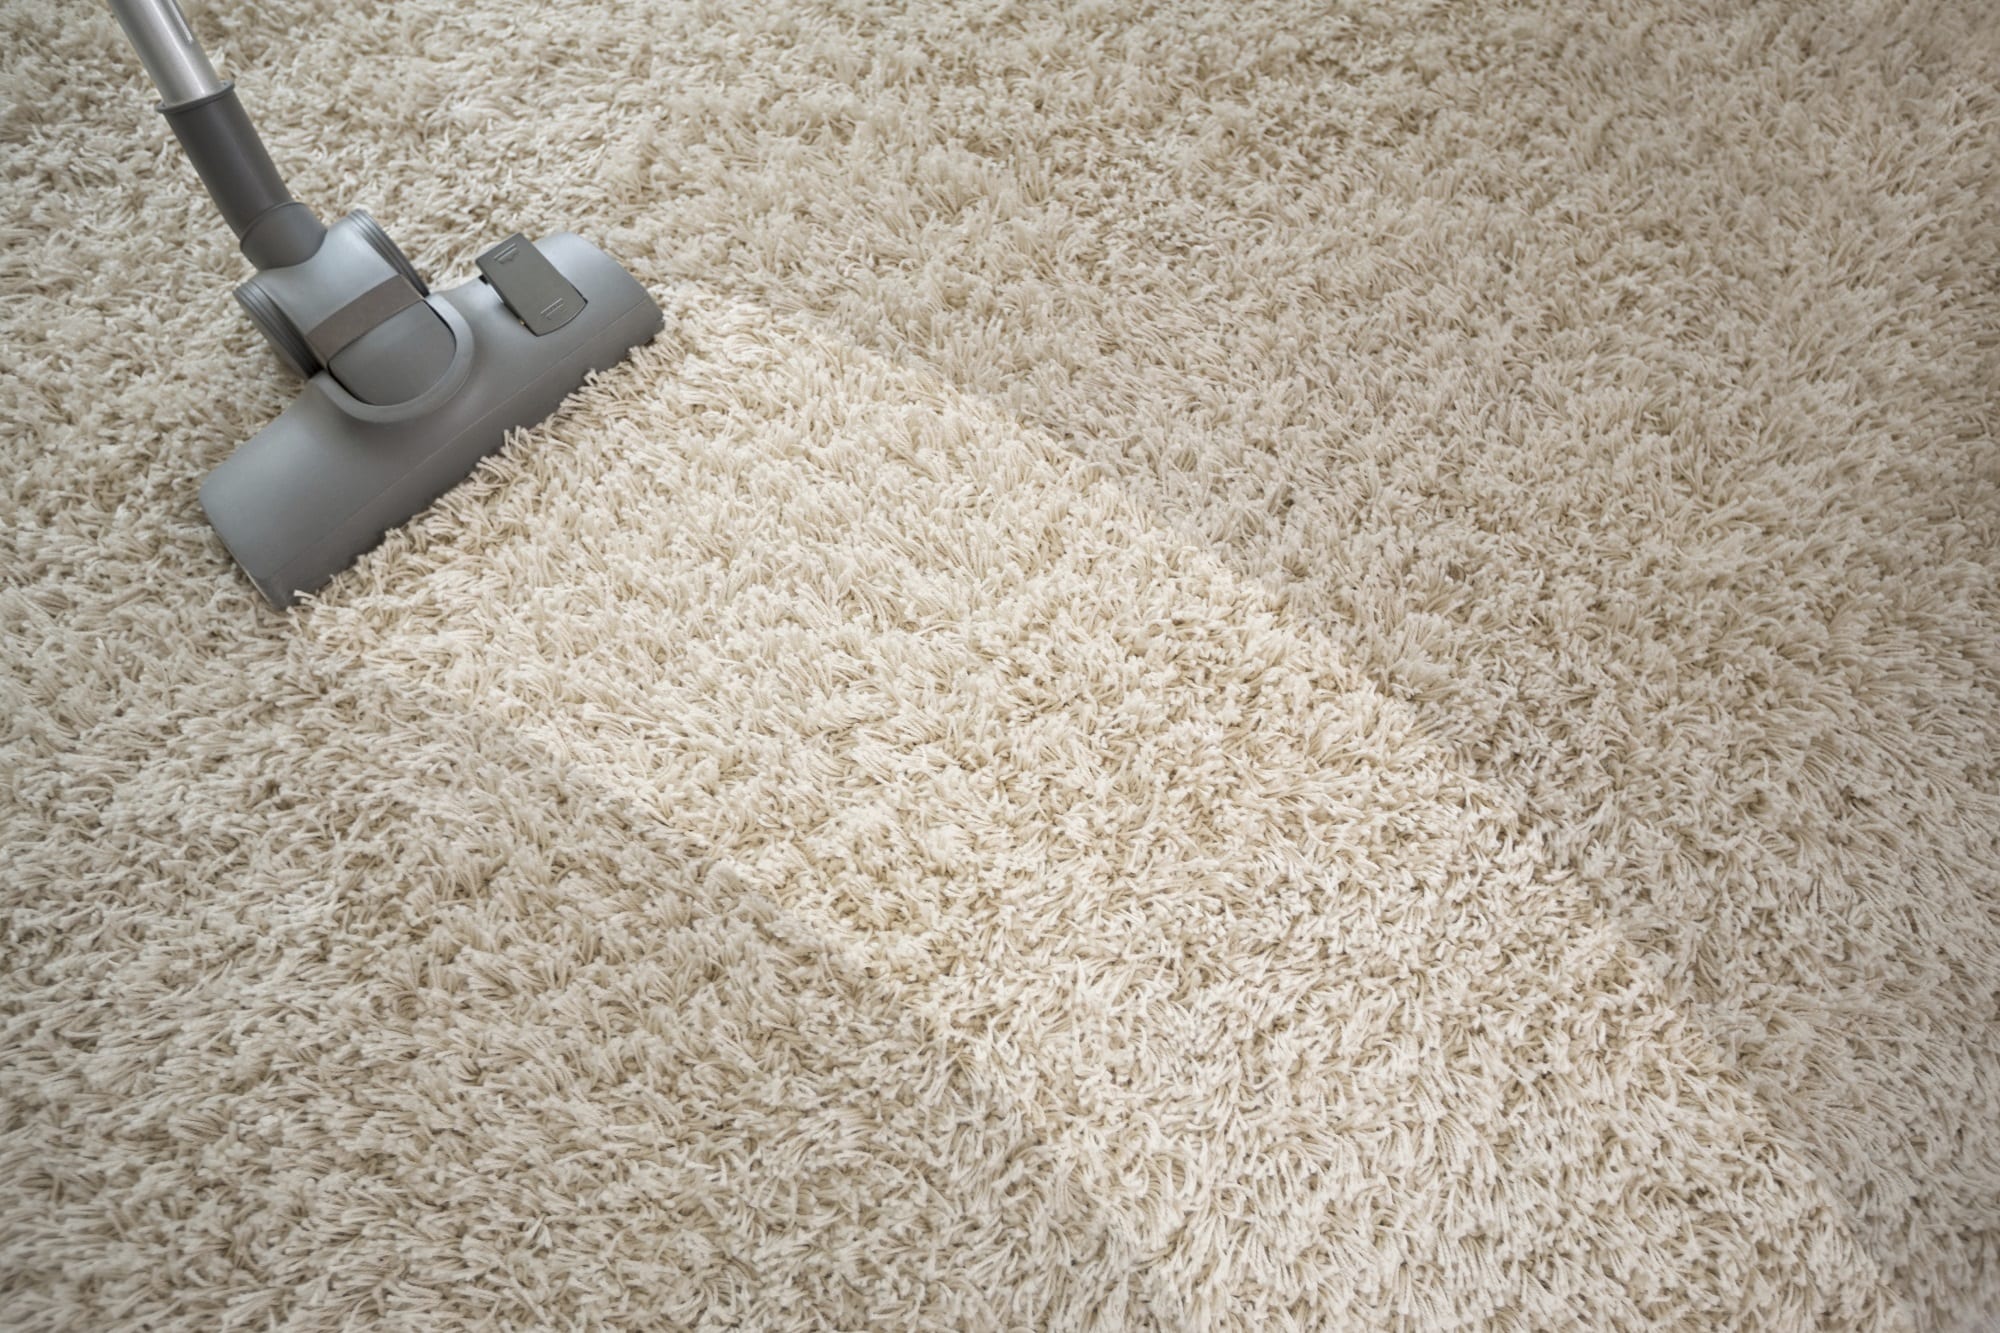 Vacuuming rough carpet with vacuum cleaner